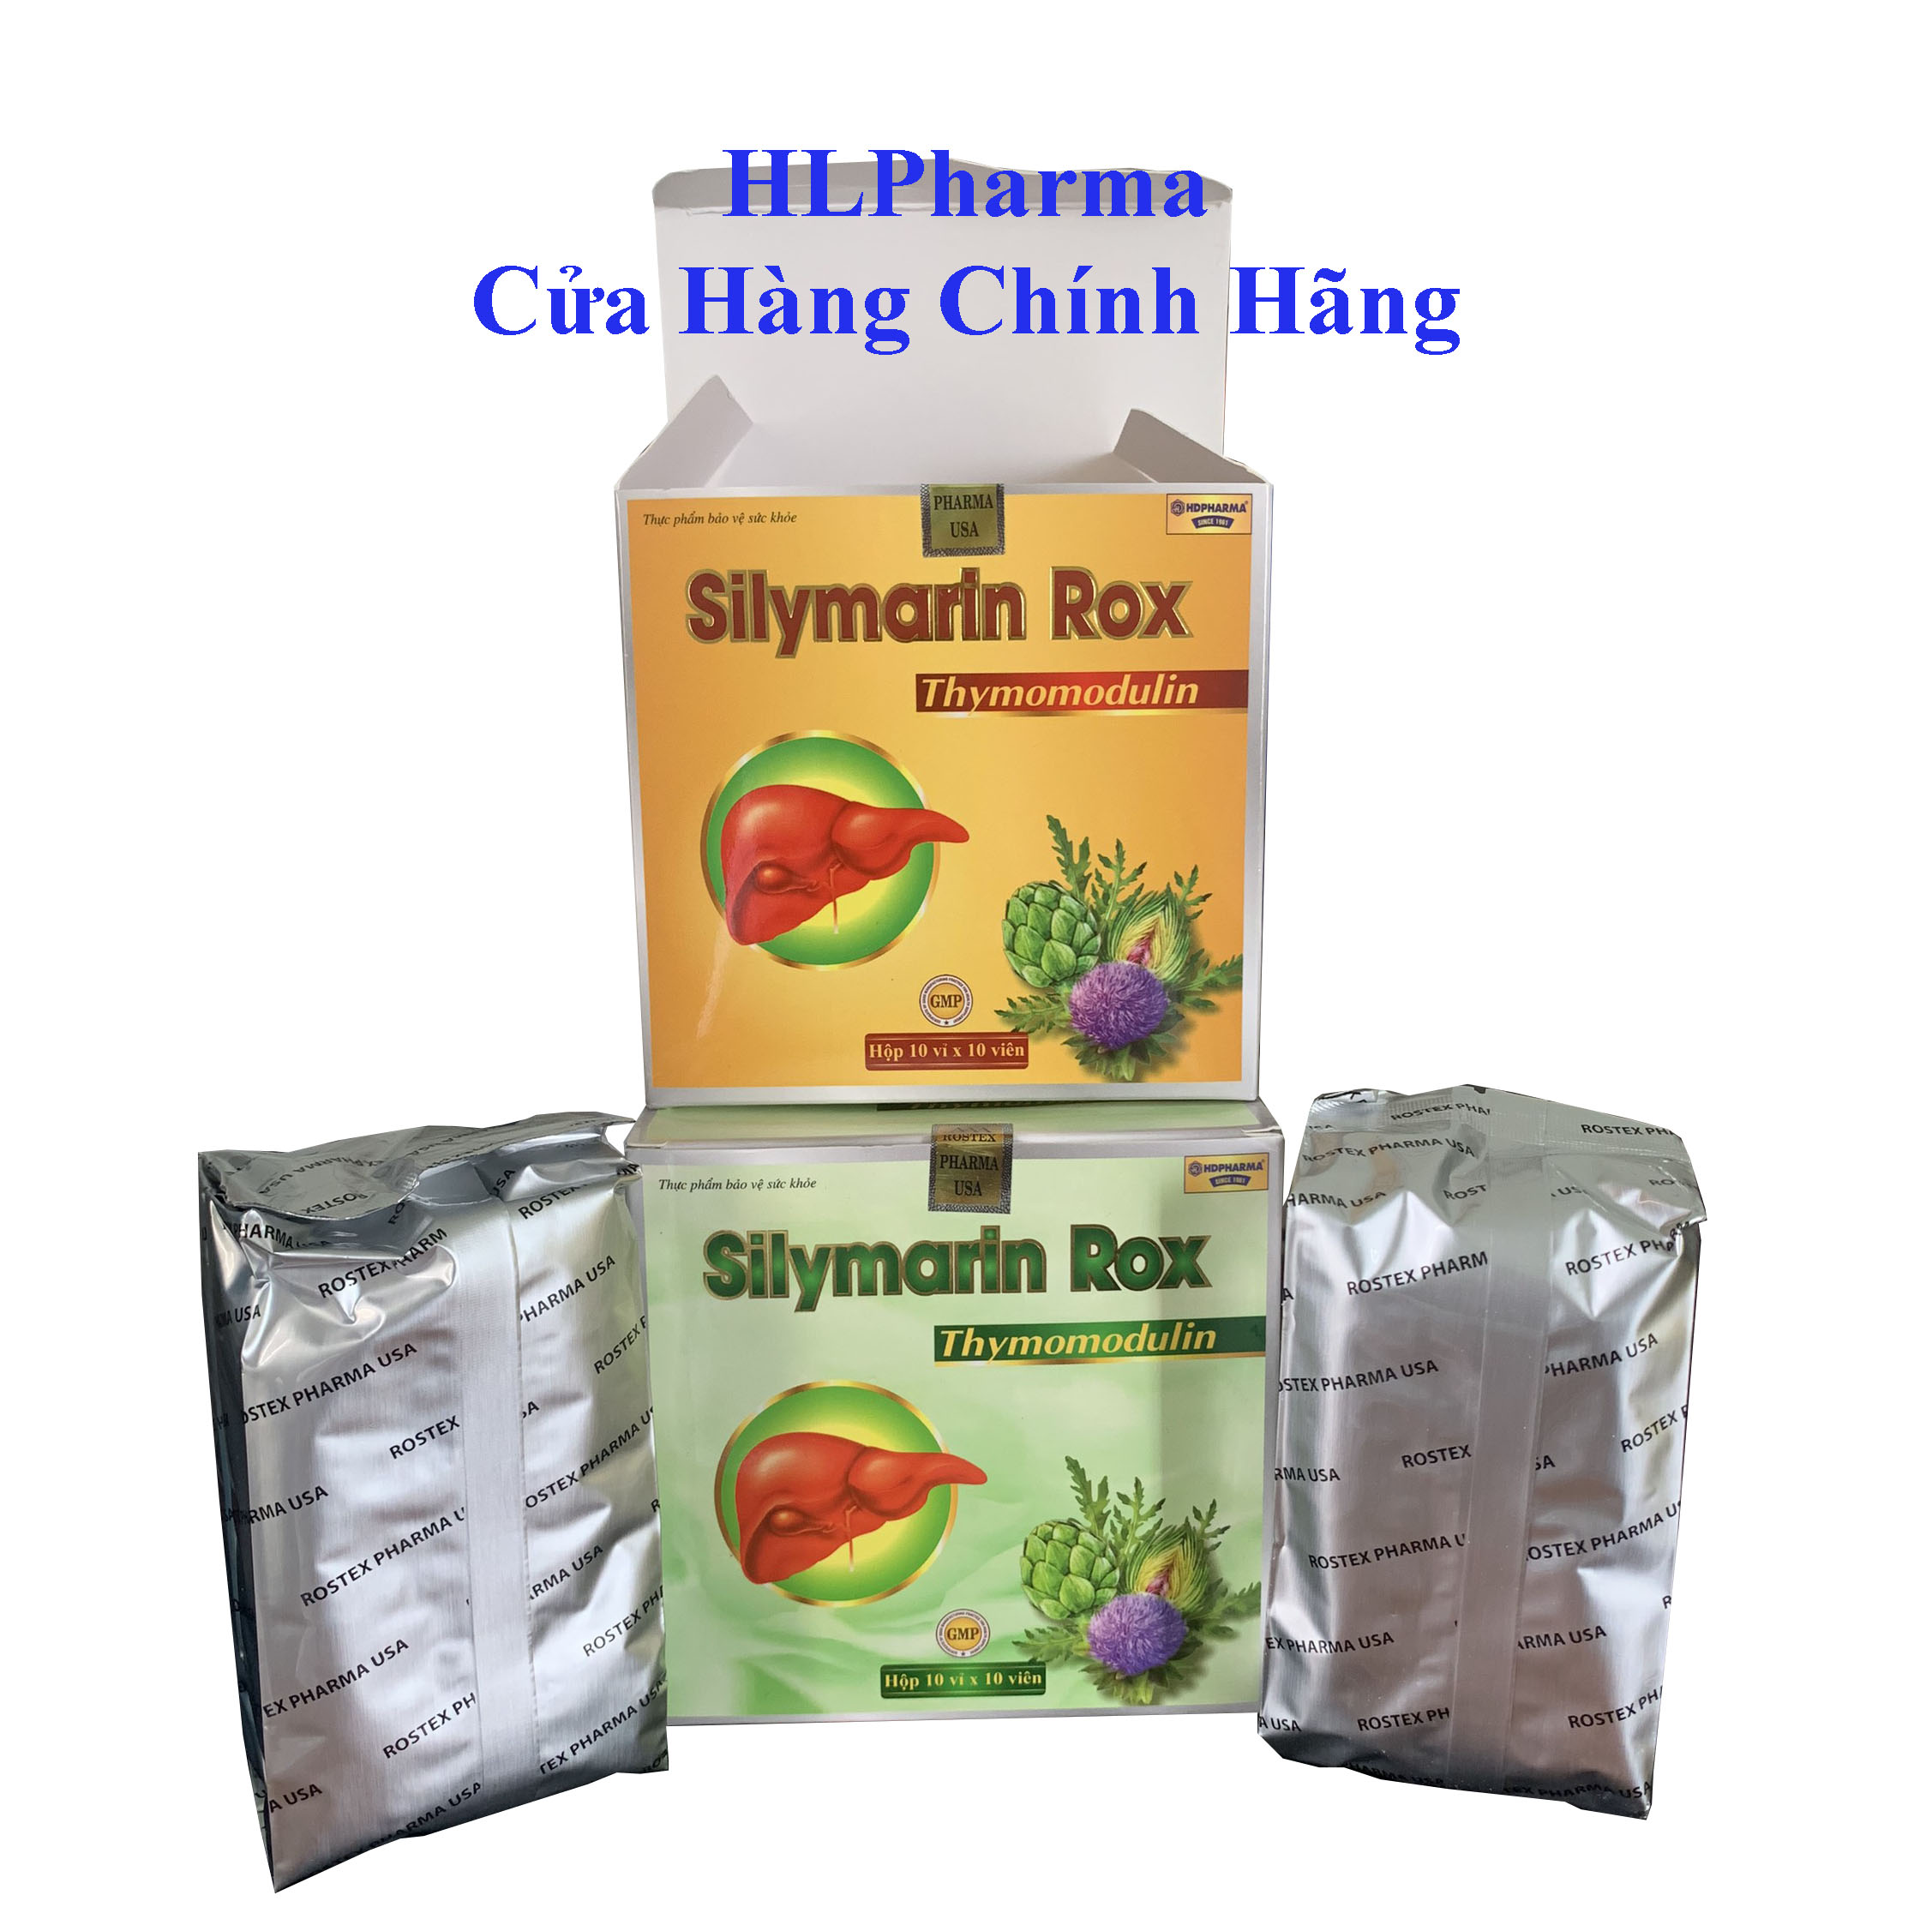 Silymarin rox - giúp mát gan, giải độc gan, bảo vệ gan